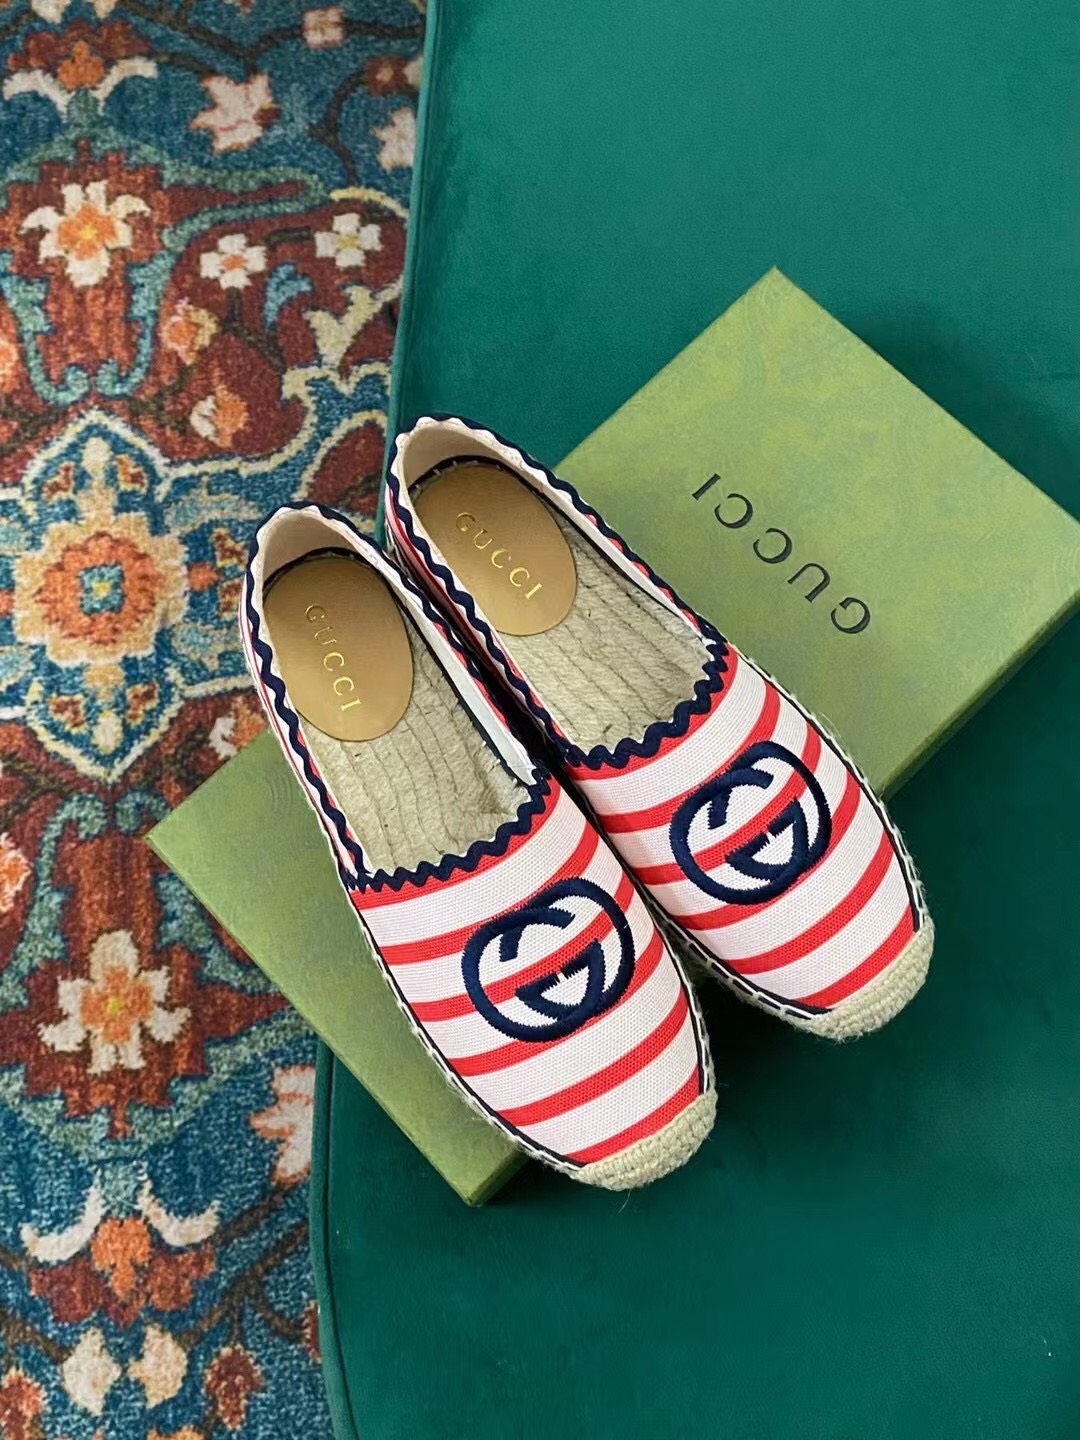 Gucci Sedge Shoes 2022